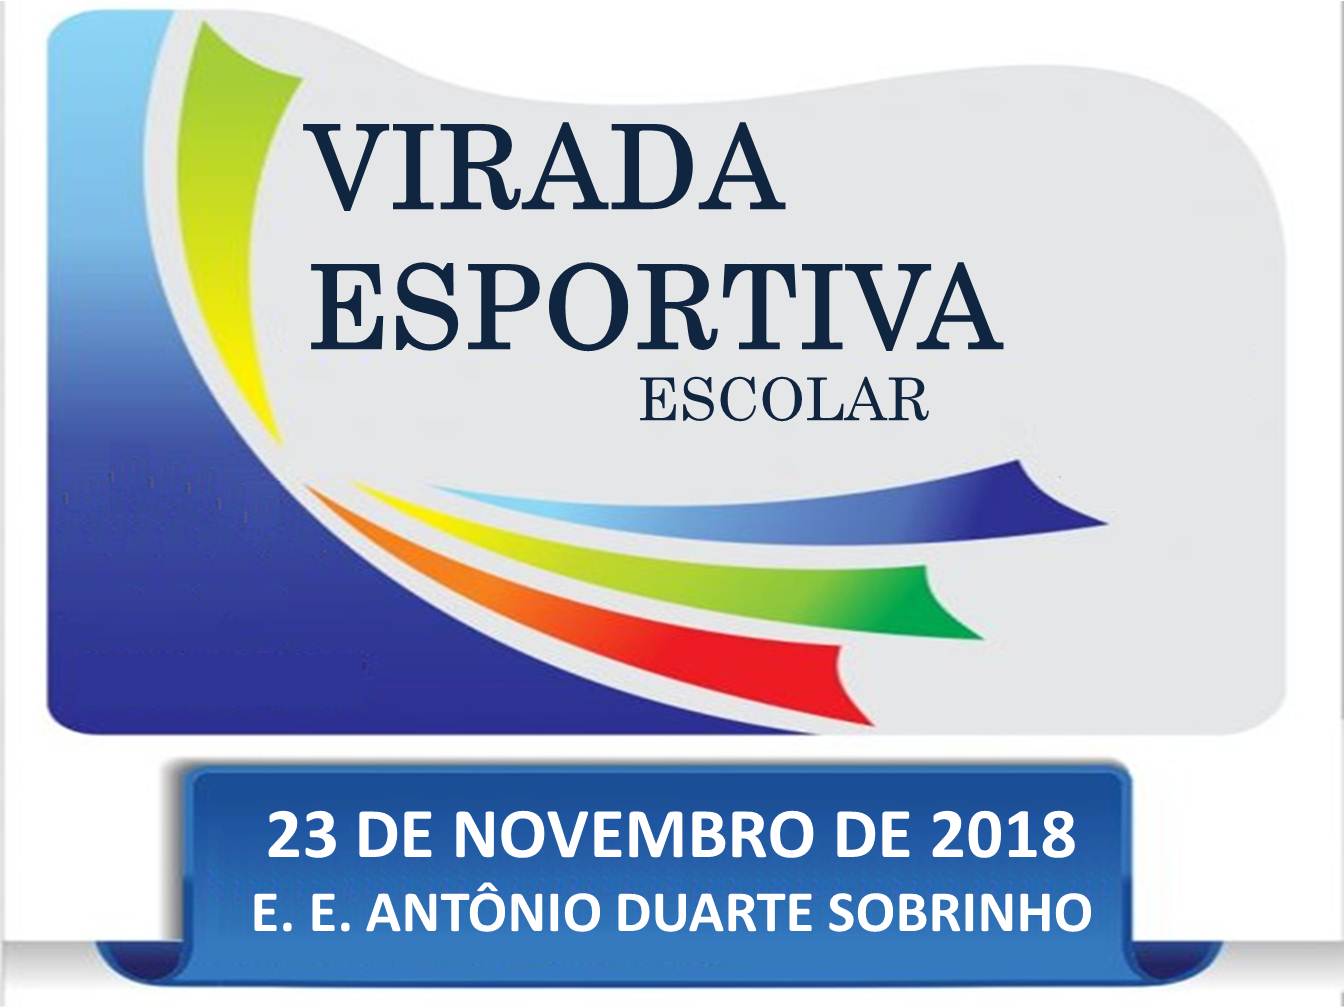 VIRADA ESPORTIVA ESCOLAR 2018 - Campanário